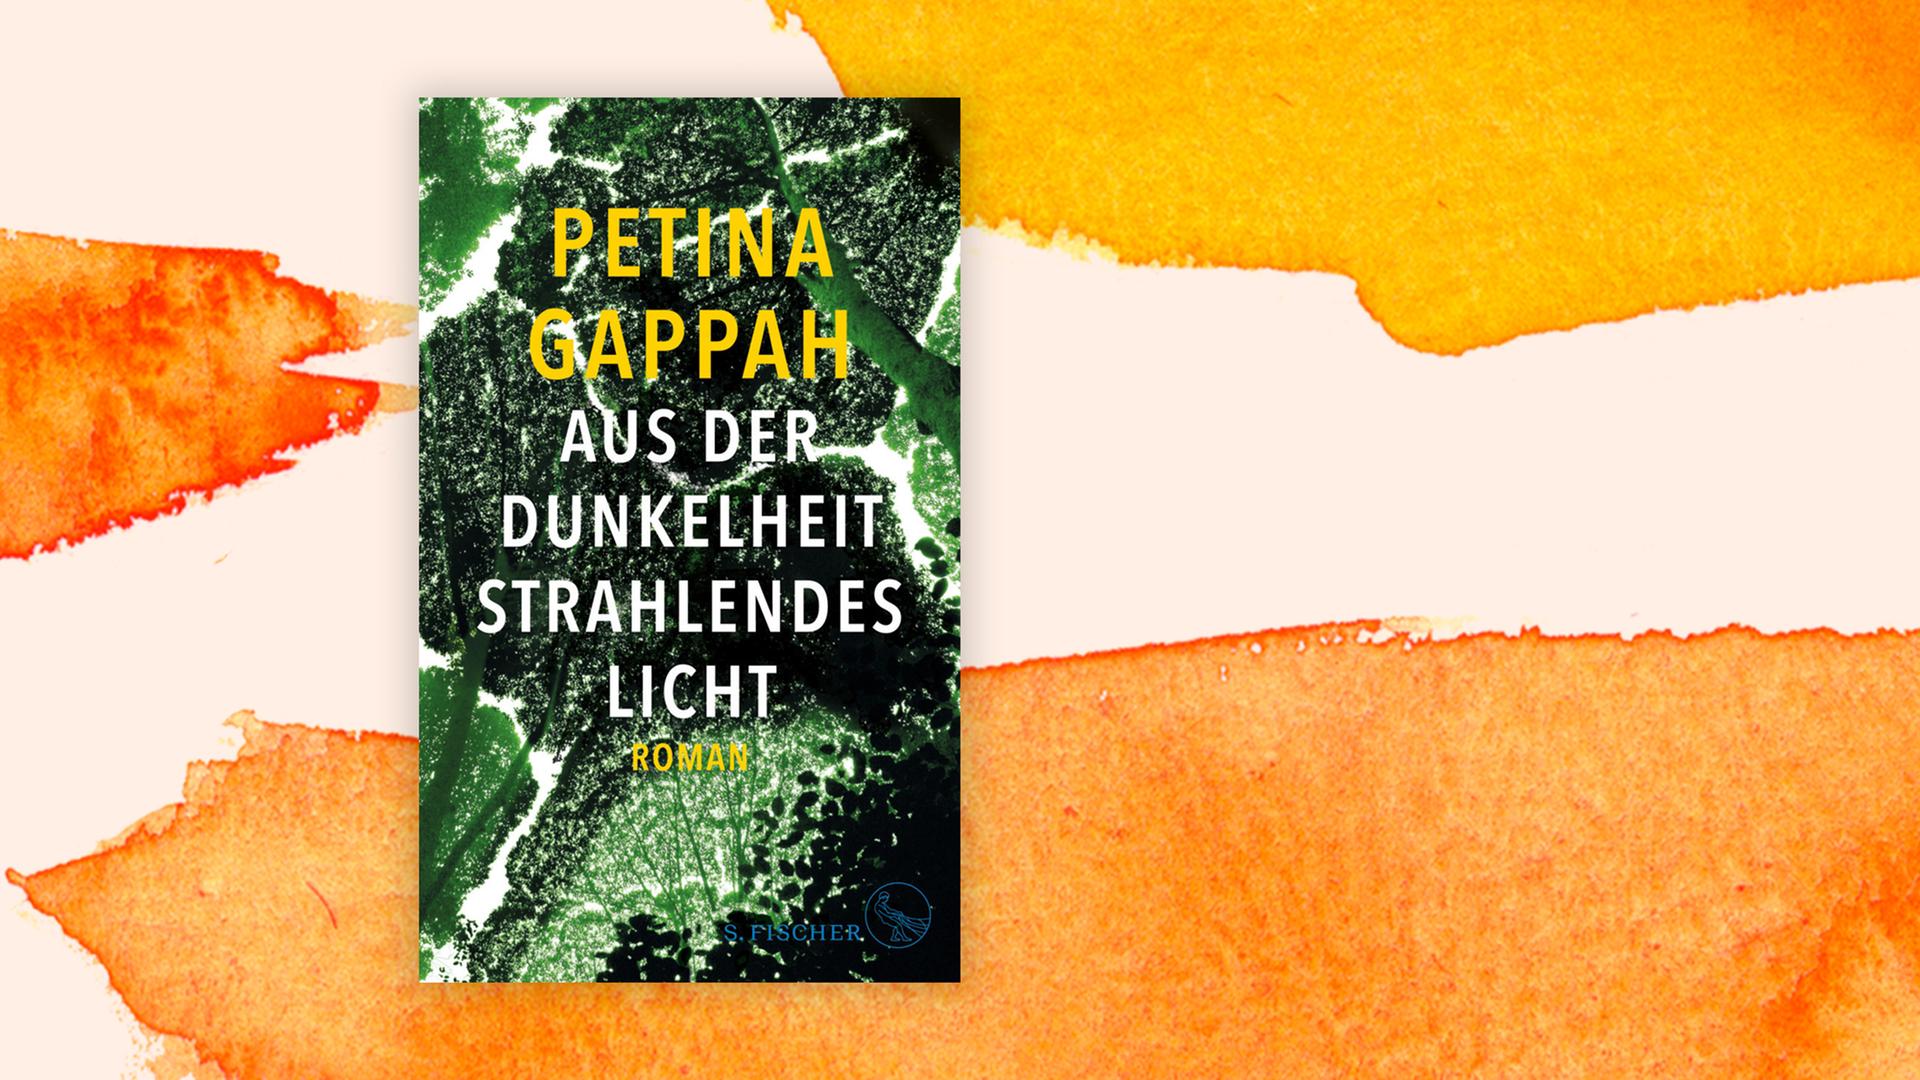 Buchcover von "Aus der Dunkelheit strahlendes Licht" von Petina Gappah